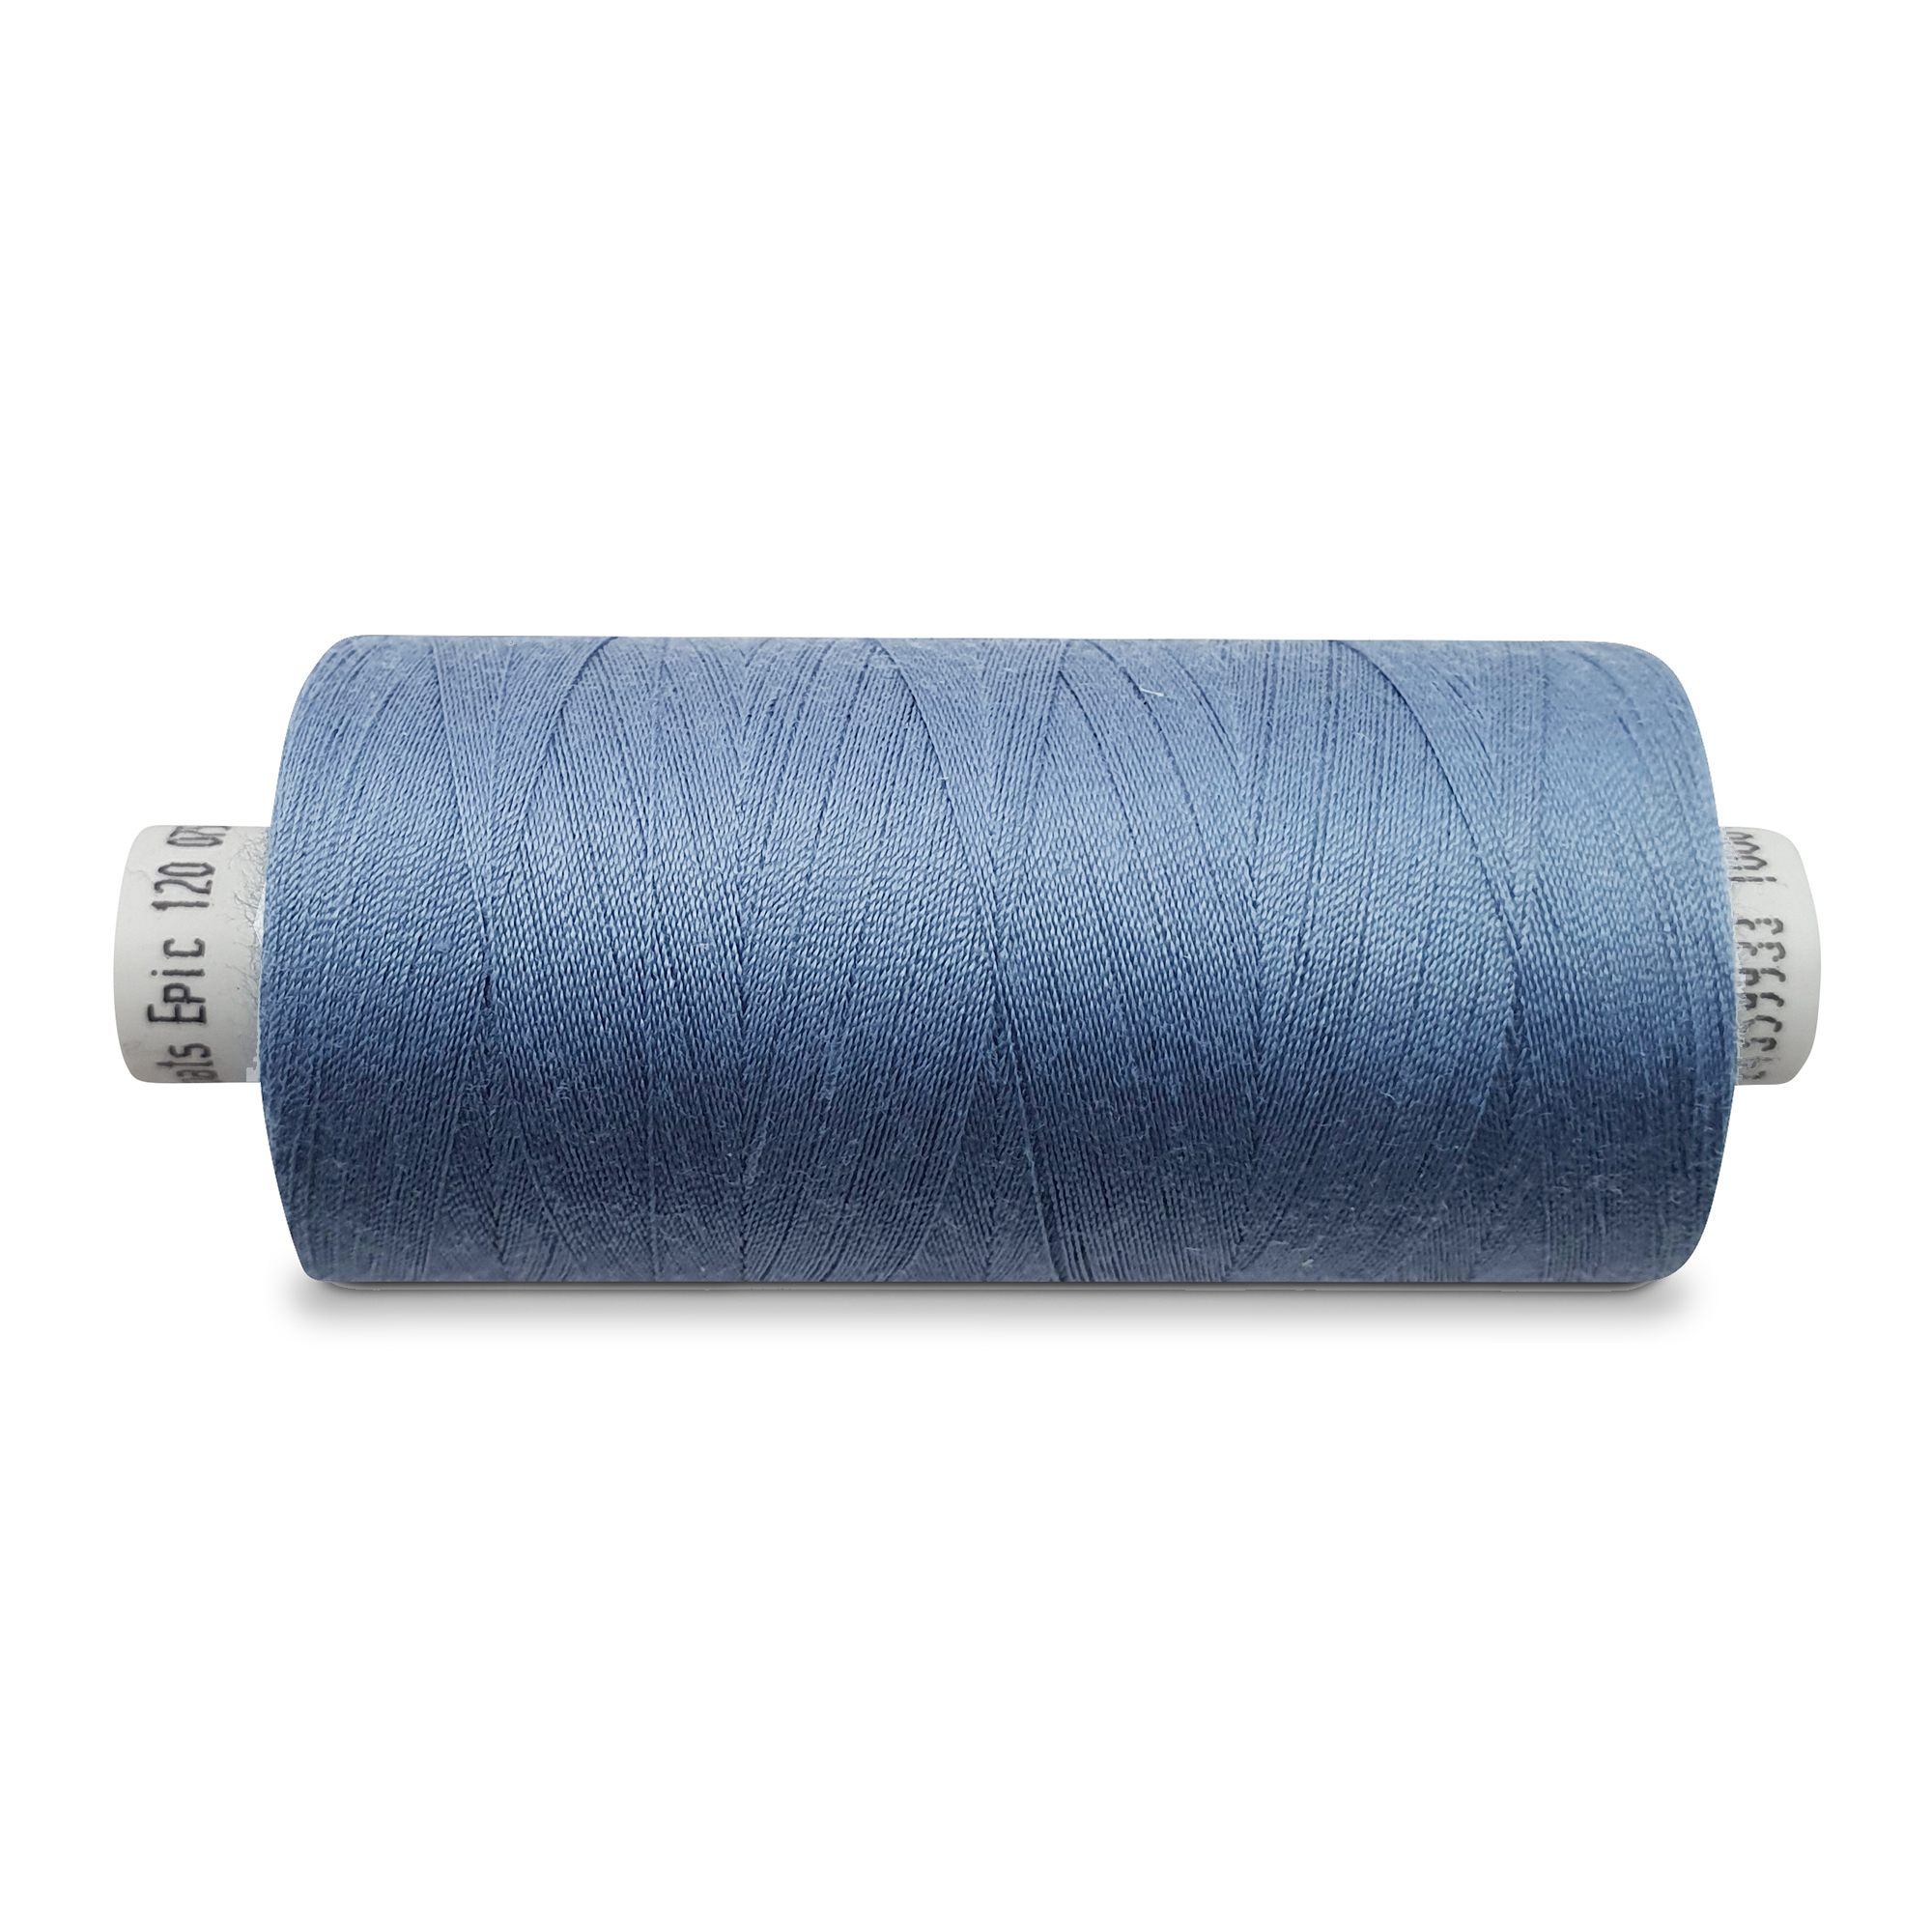 Sewing thread big, 5000m, jeans grey blue